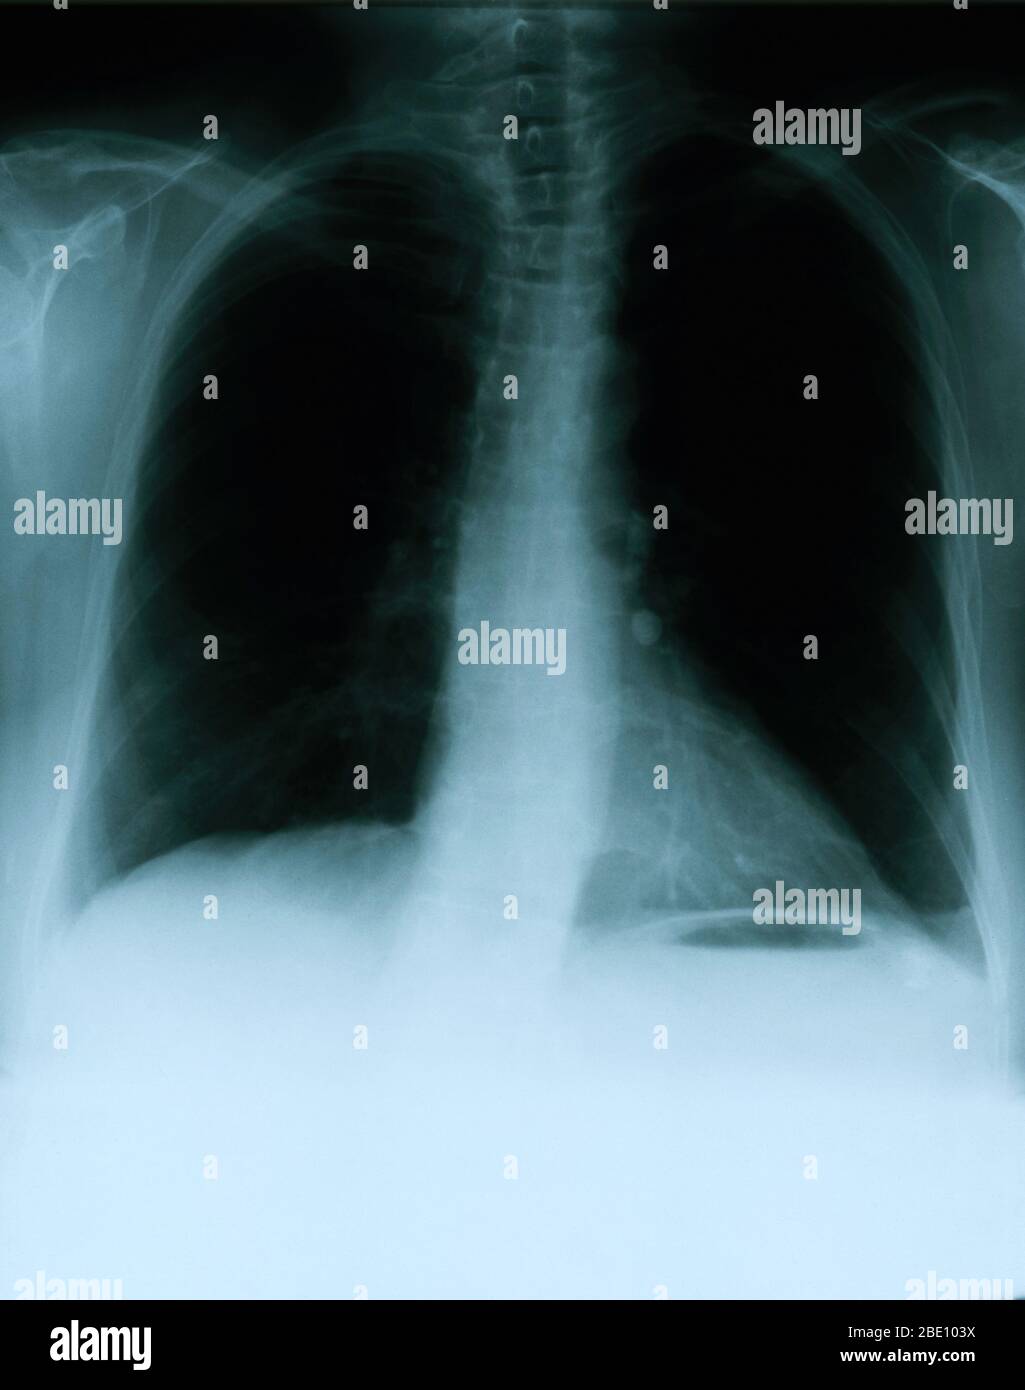 Röntgenaufnahme mit einer Frontansicht der Brust eines 54-jährigen Weibchens. Die Röntgenaufnahme zeigt einen verkalkten linken Hilar-Lymphknoten, der höchstwahrscheinlich aus einer früheren granulomatösen Erkrankung resultiert. Auffällig ist auch ein vage Bereich mit erhöhter Dichte innerhalb des lateralen Aspekts der rechten Spitze und eine leichte skoliotische Deformation der Rückenwirbelsäule. Stockfoto